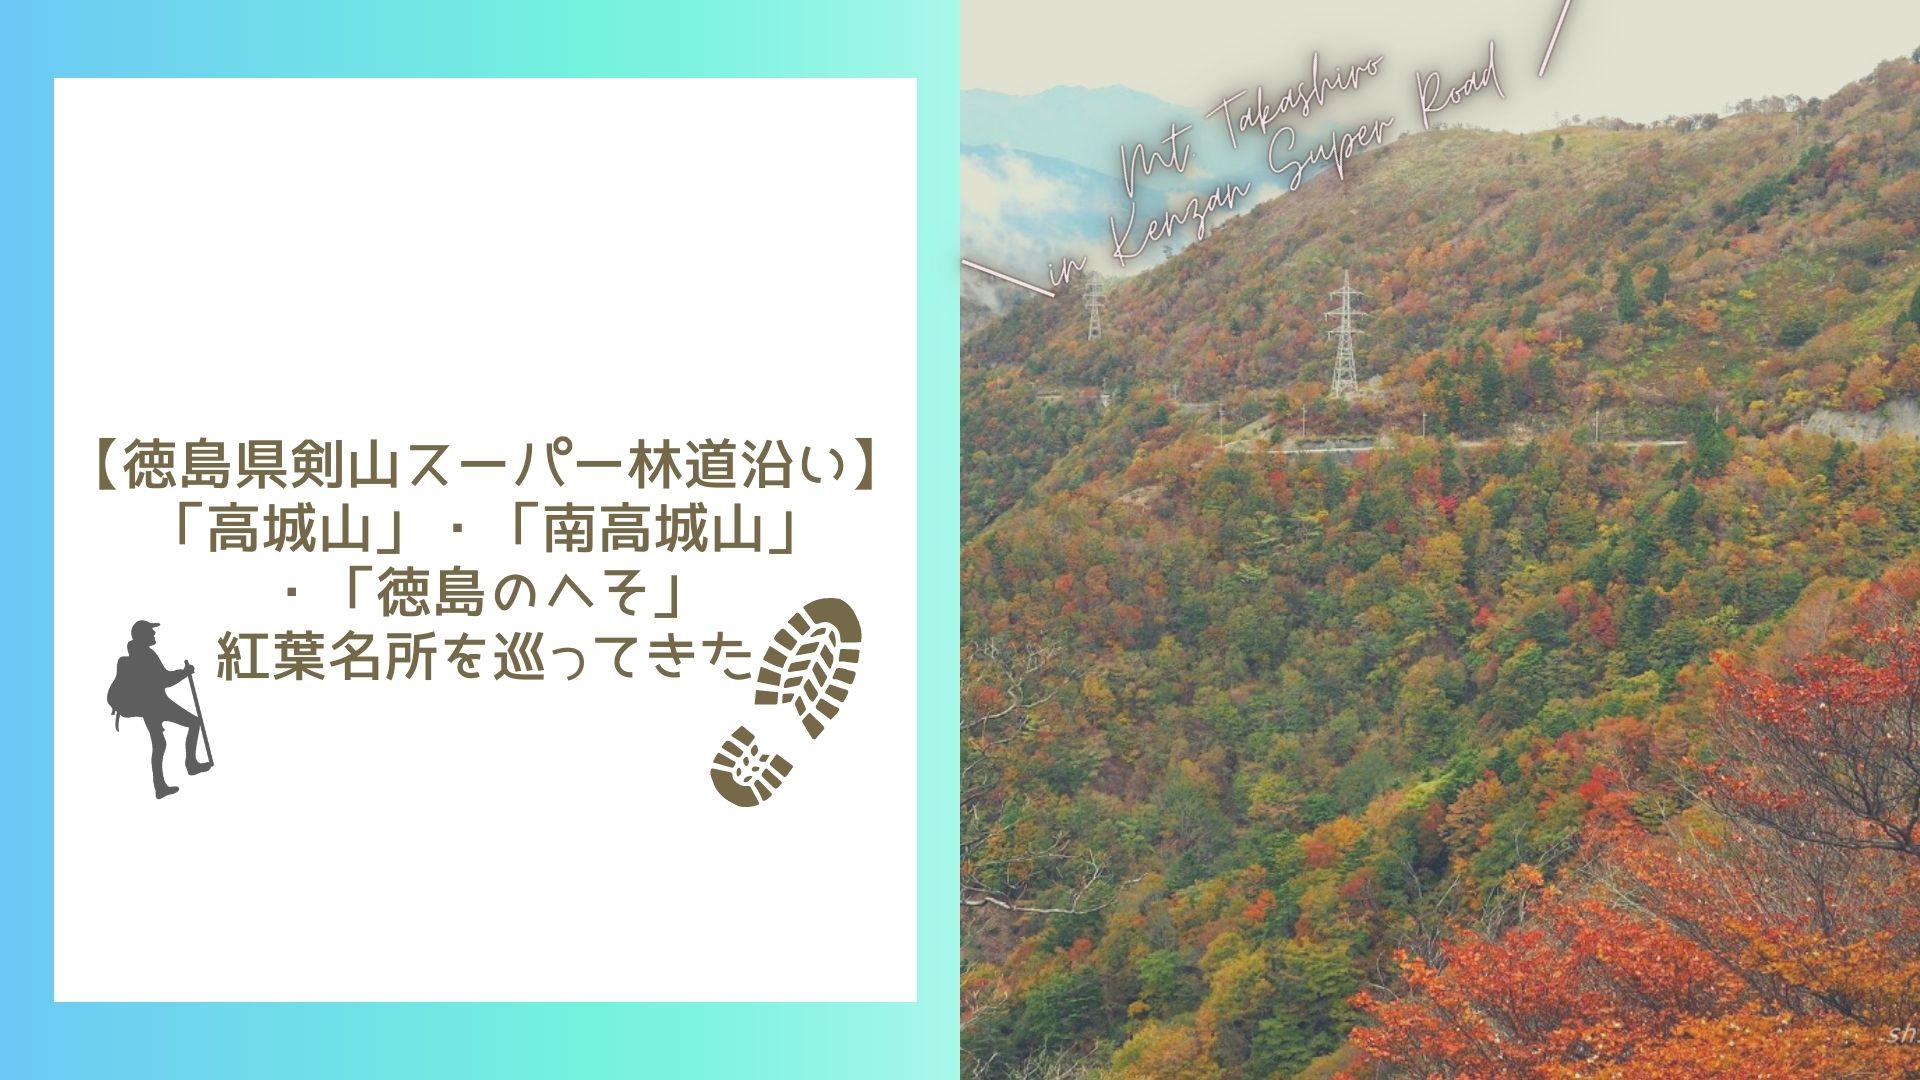 【徳島県剣山スーパー林道沿い】「高城山」・「南高城山」・「徳島のへそ」紅葉名所を巡ってきた